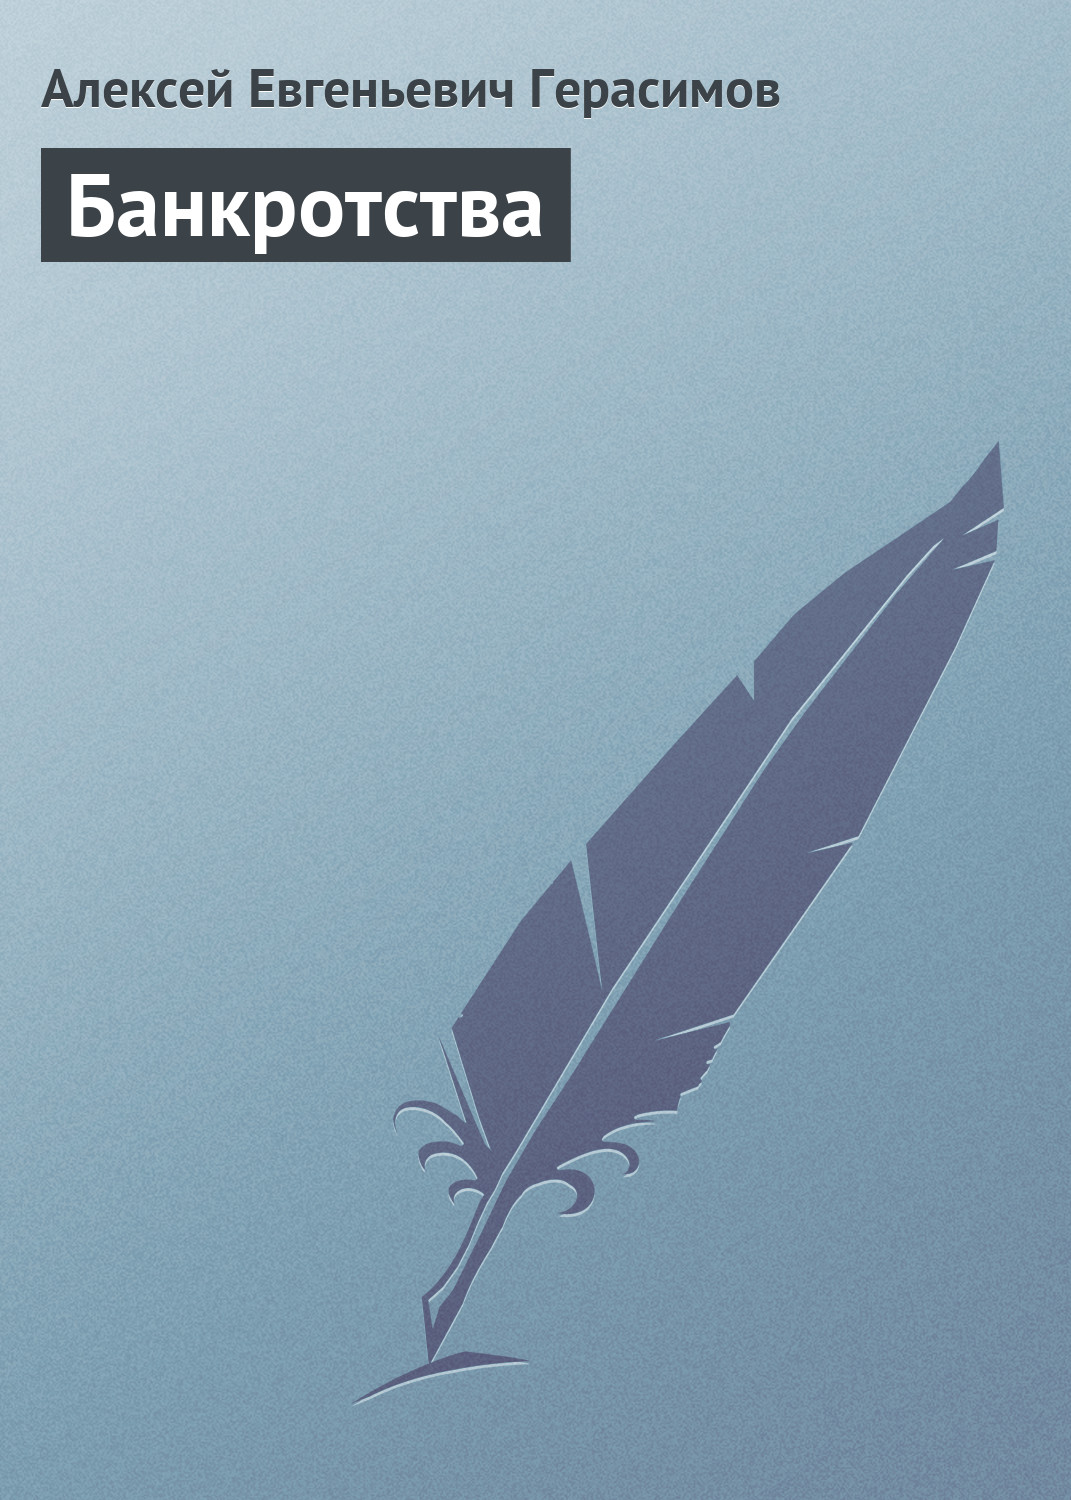 Книга Банкротства из серии , созданная Алексей Герасимов, может относится к жанру История. Стоимость книги Банкротства  с идентификатором 164420 составляет 99.00 руб.